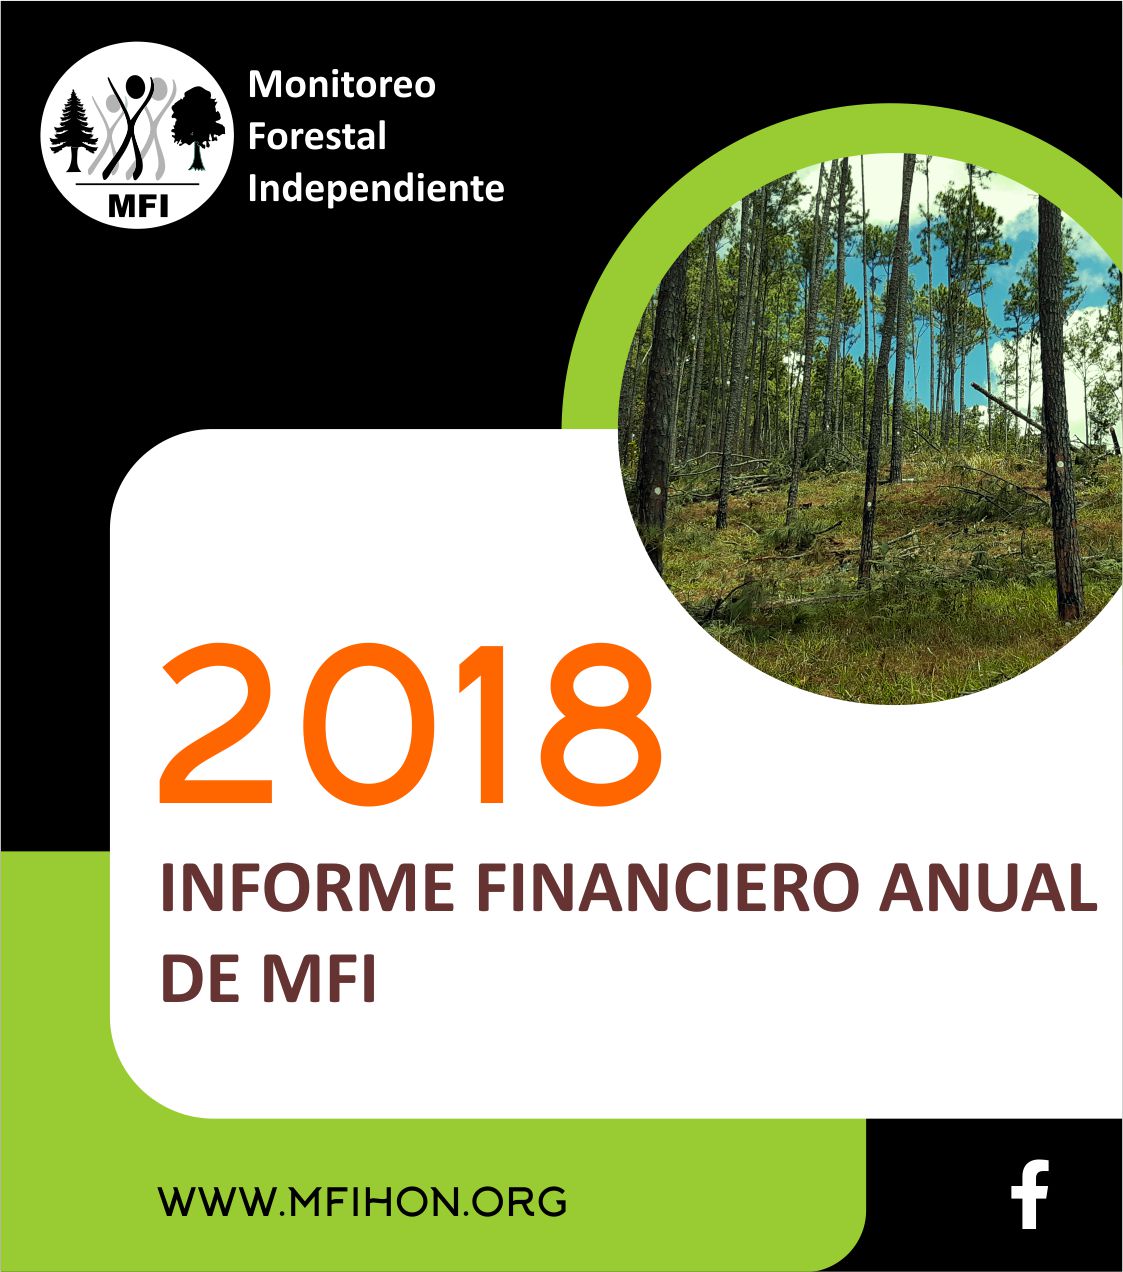 INFORME FINANCIERO 2018